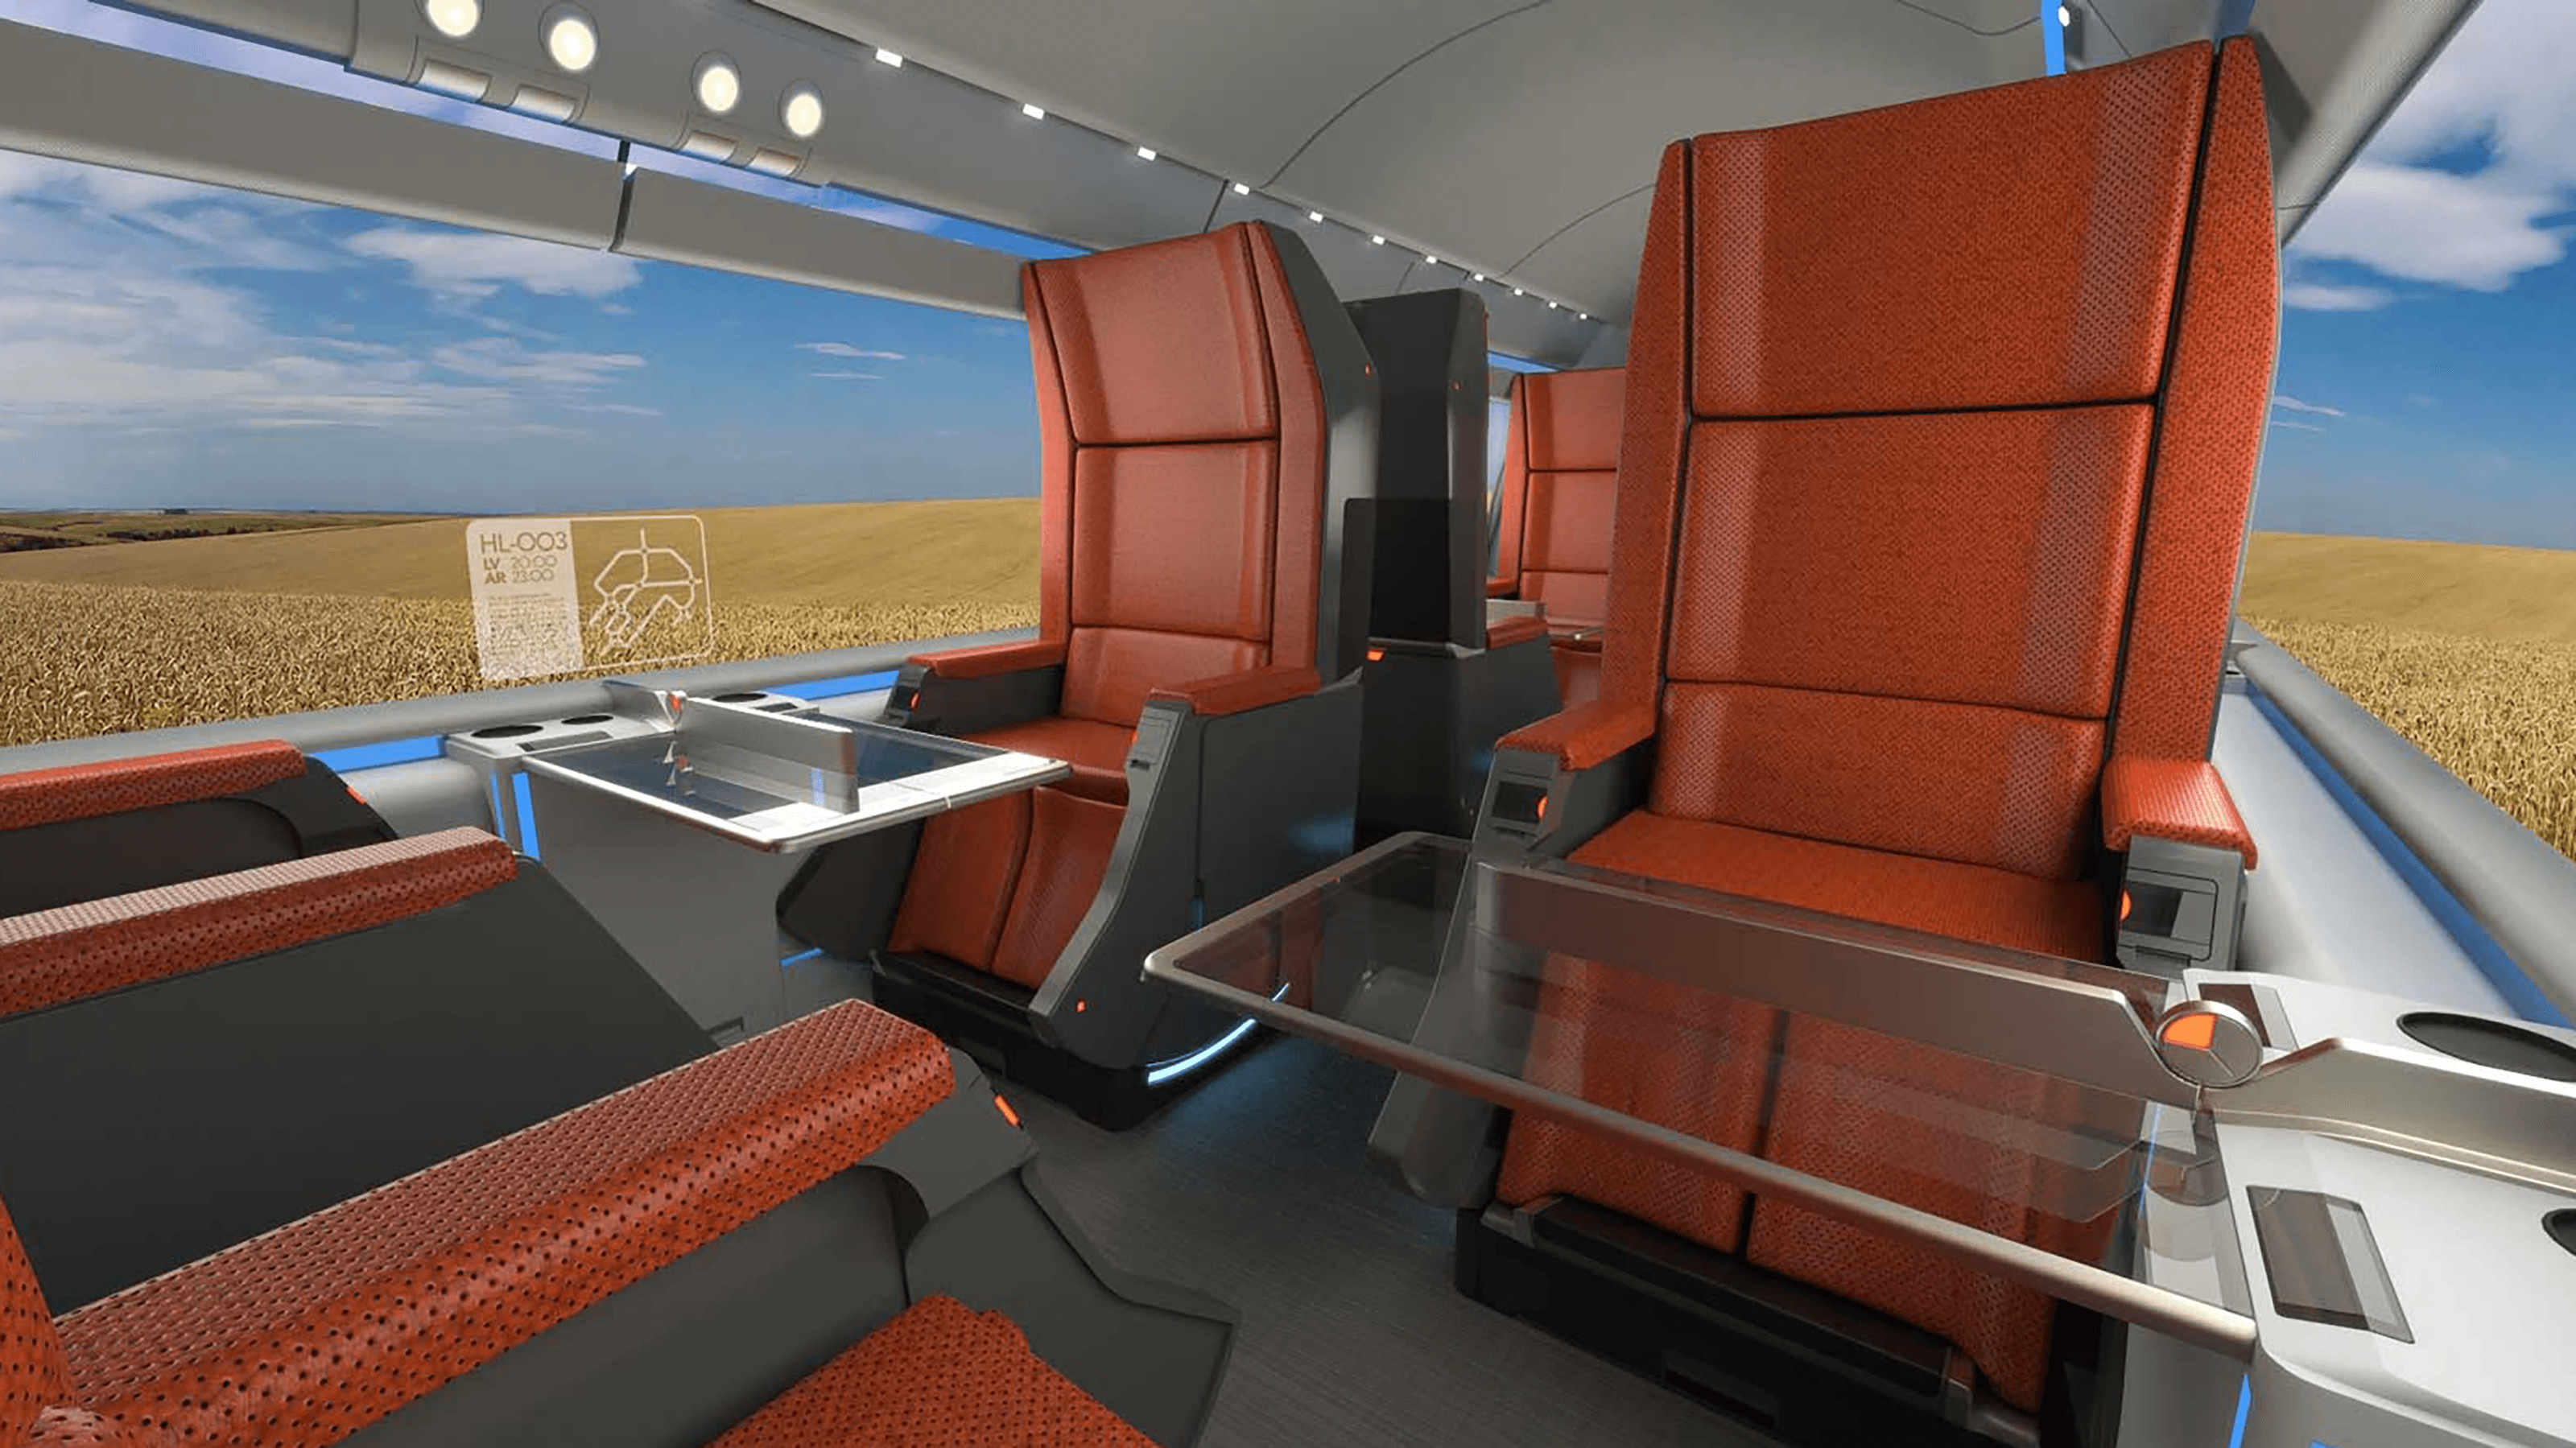 A rendering of the conceptual Hyperloop cabin desert